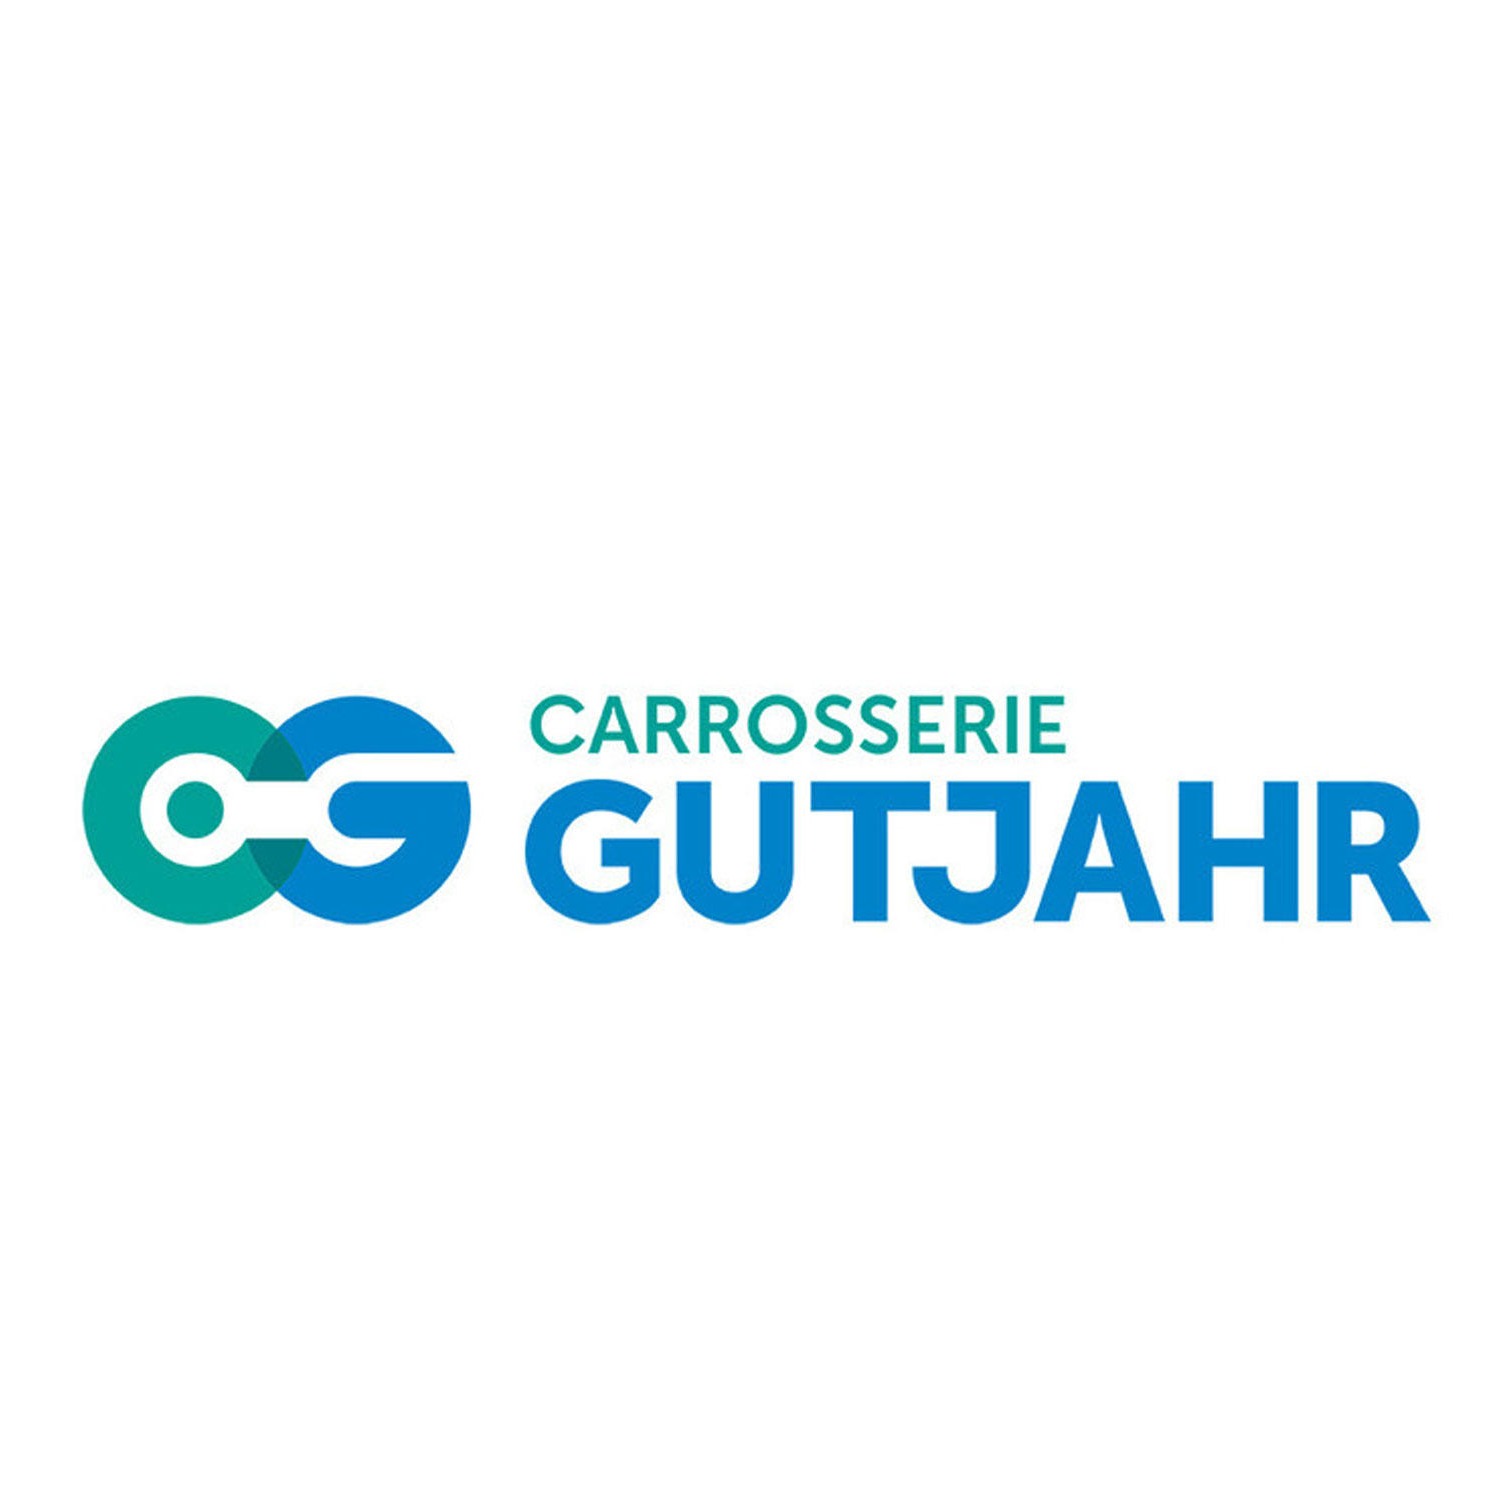 Carrosserie Gutjahr Logo